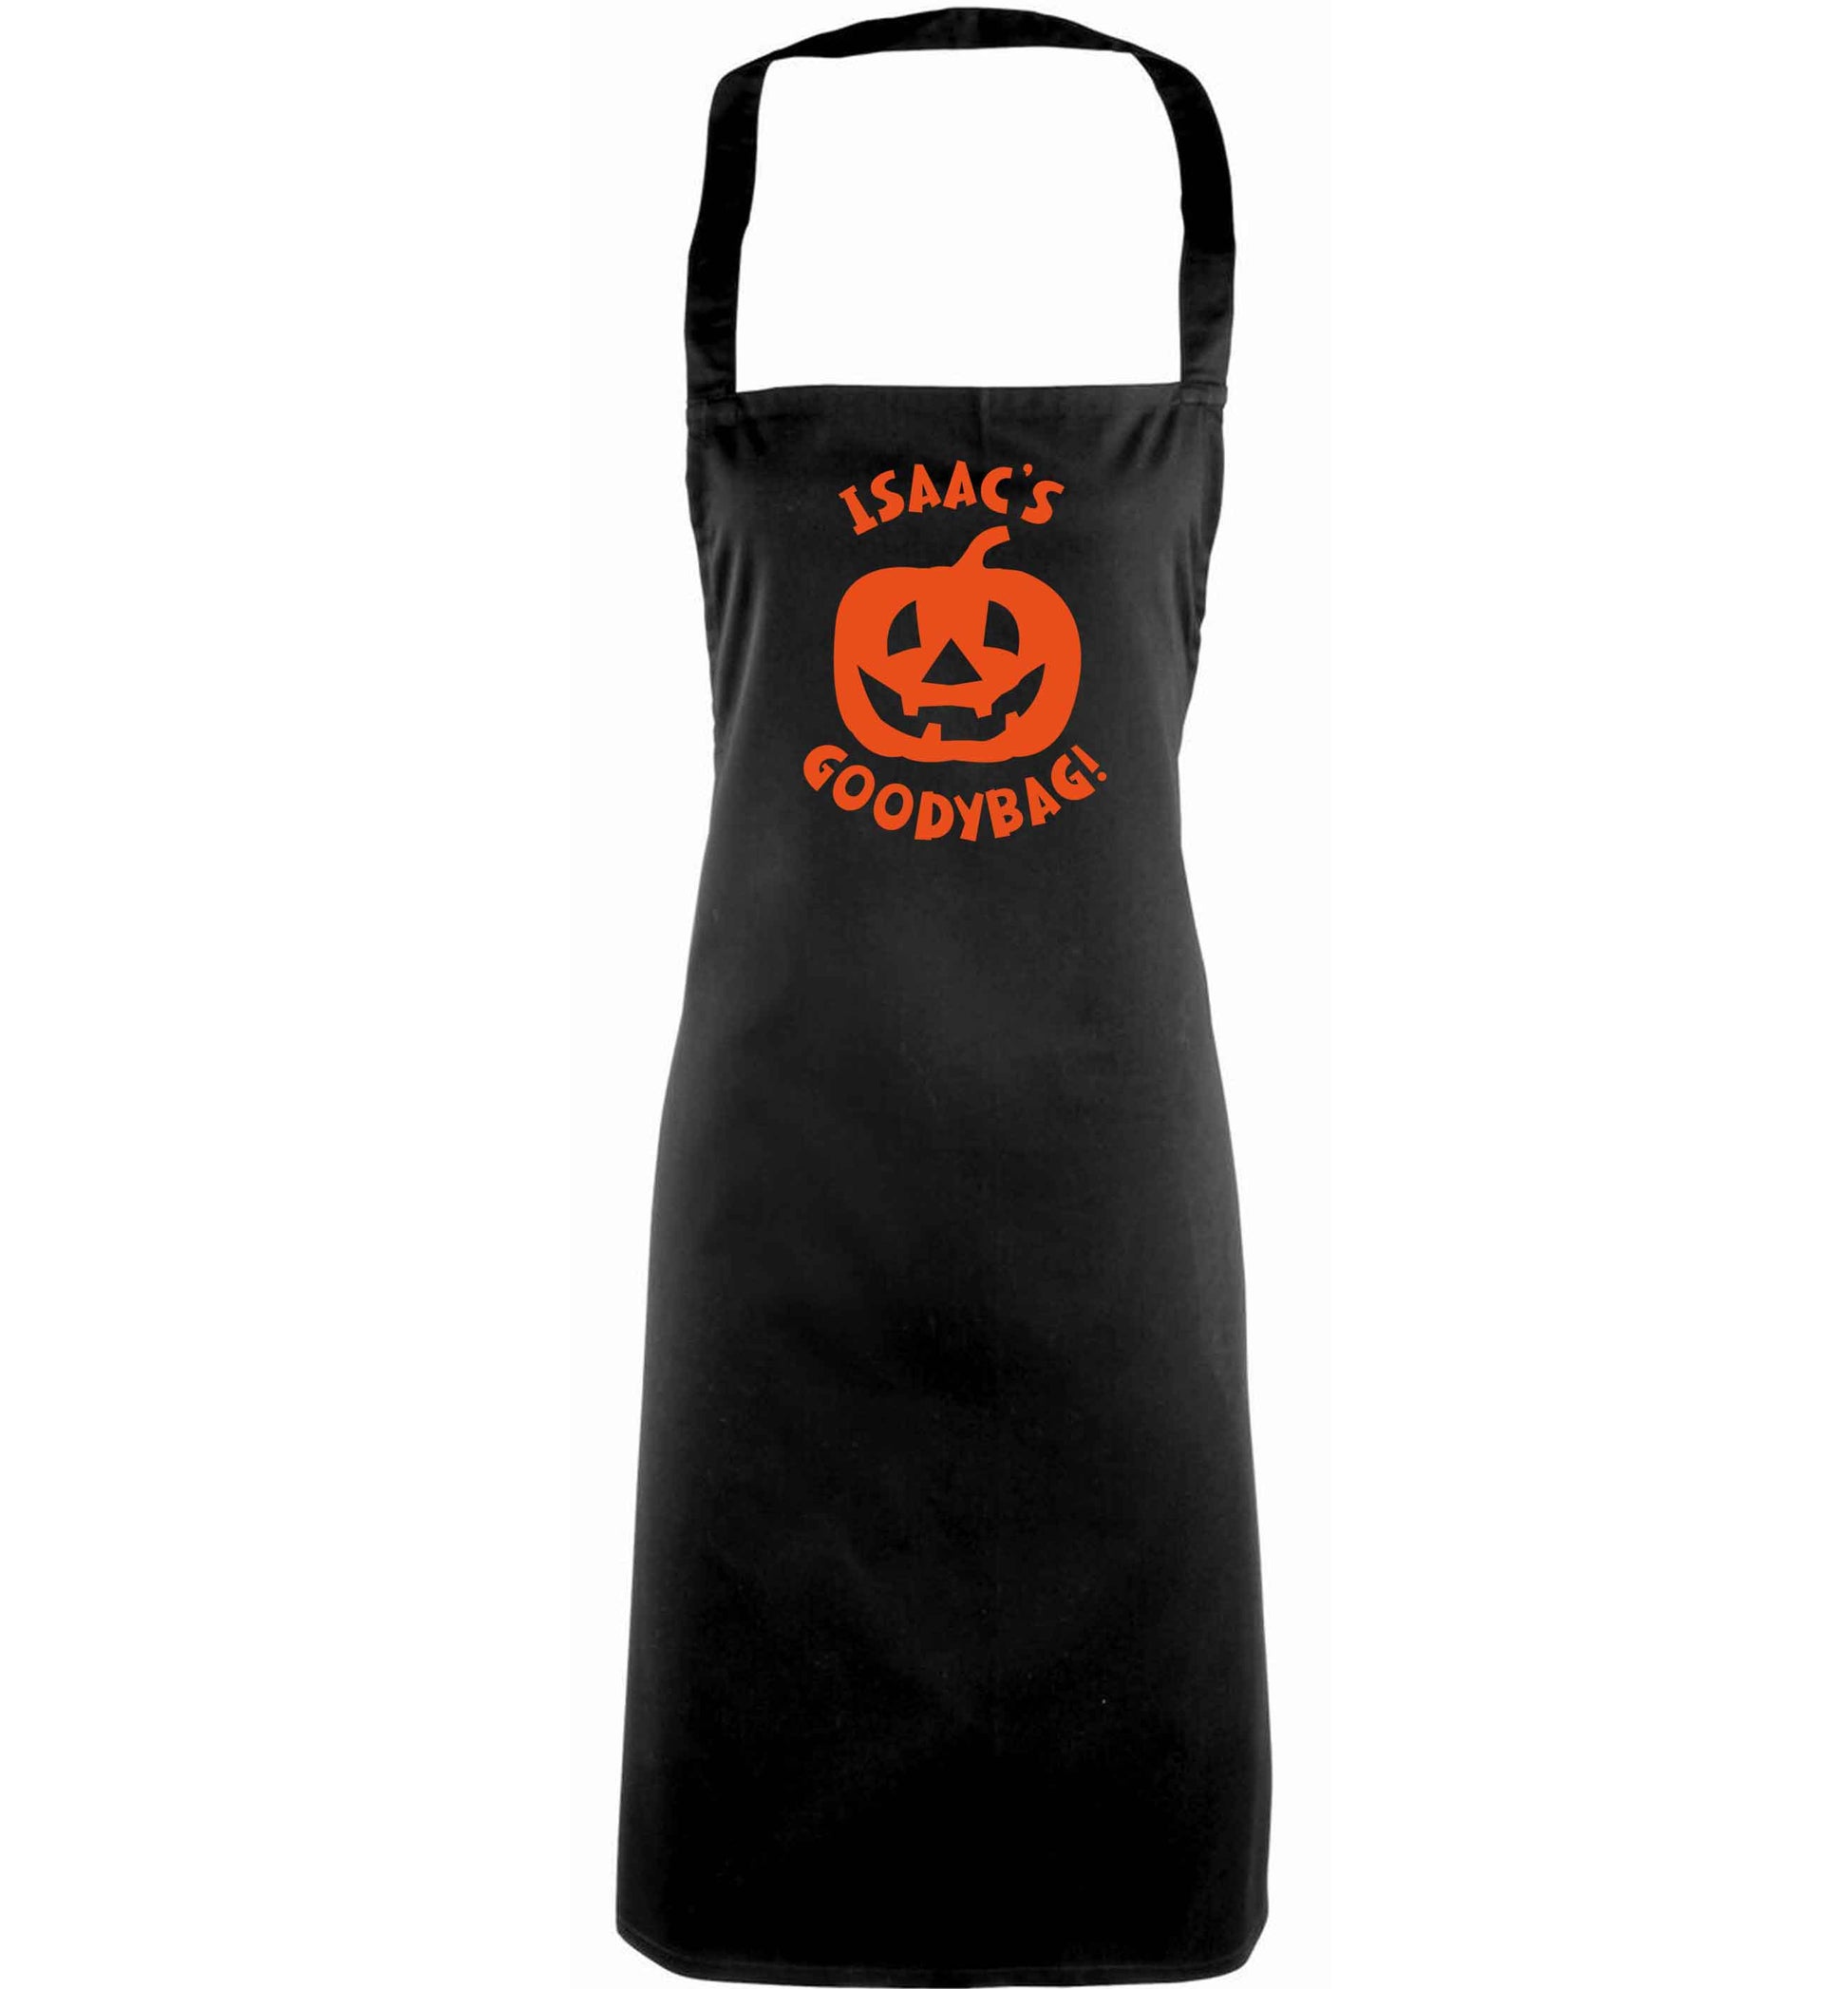 Pumpkin on Way adults black apron